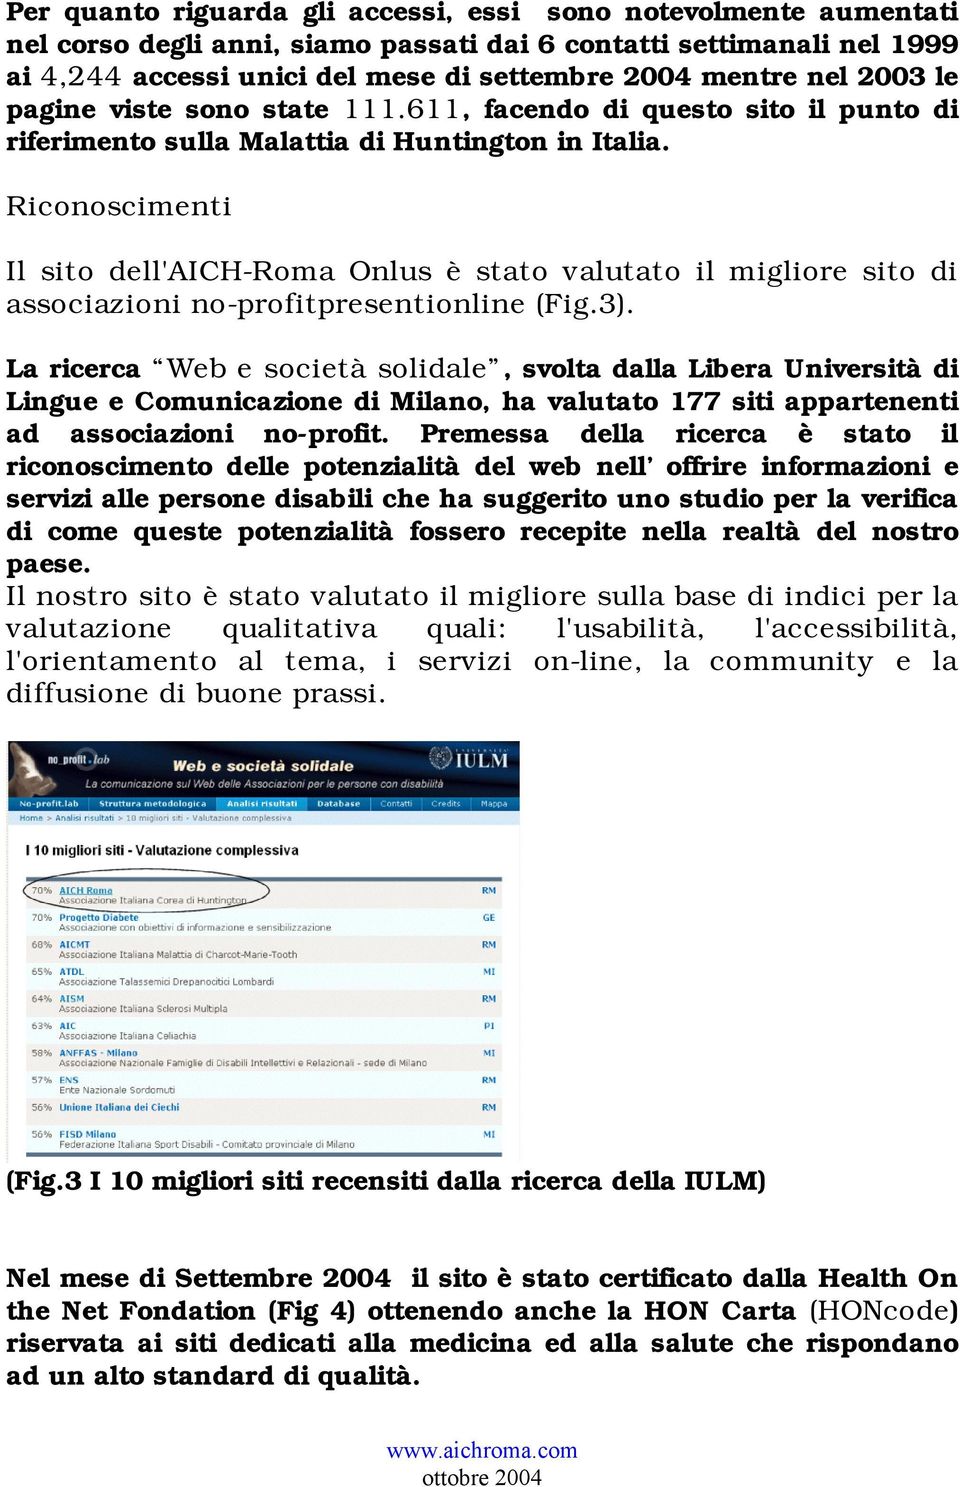 Riconoscimenti Il sito dell'aich-roma Onlus è stato valutato il migliore sito di associazioni no-profitpresentionline (Fig.3).